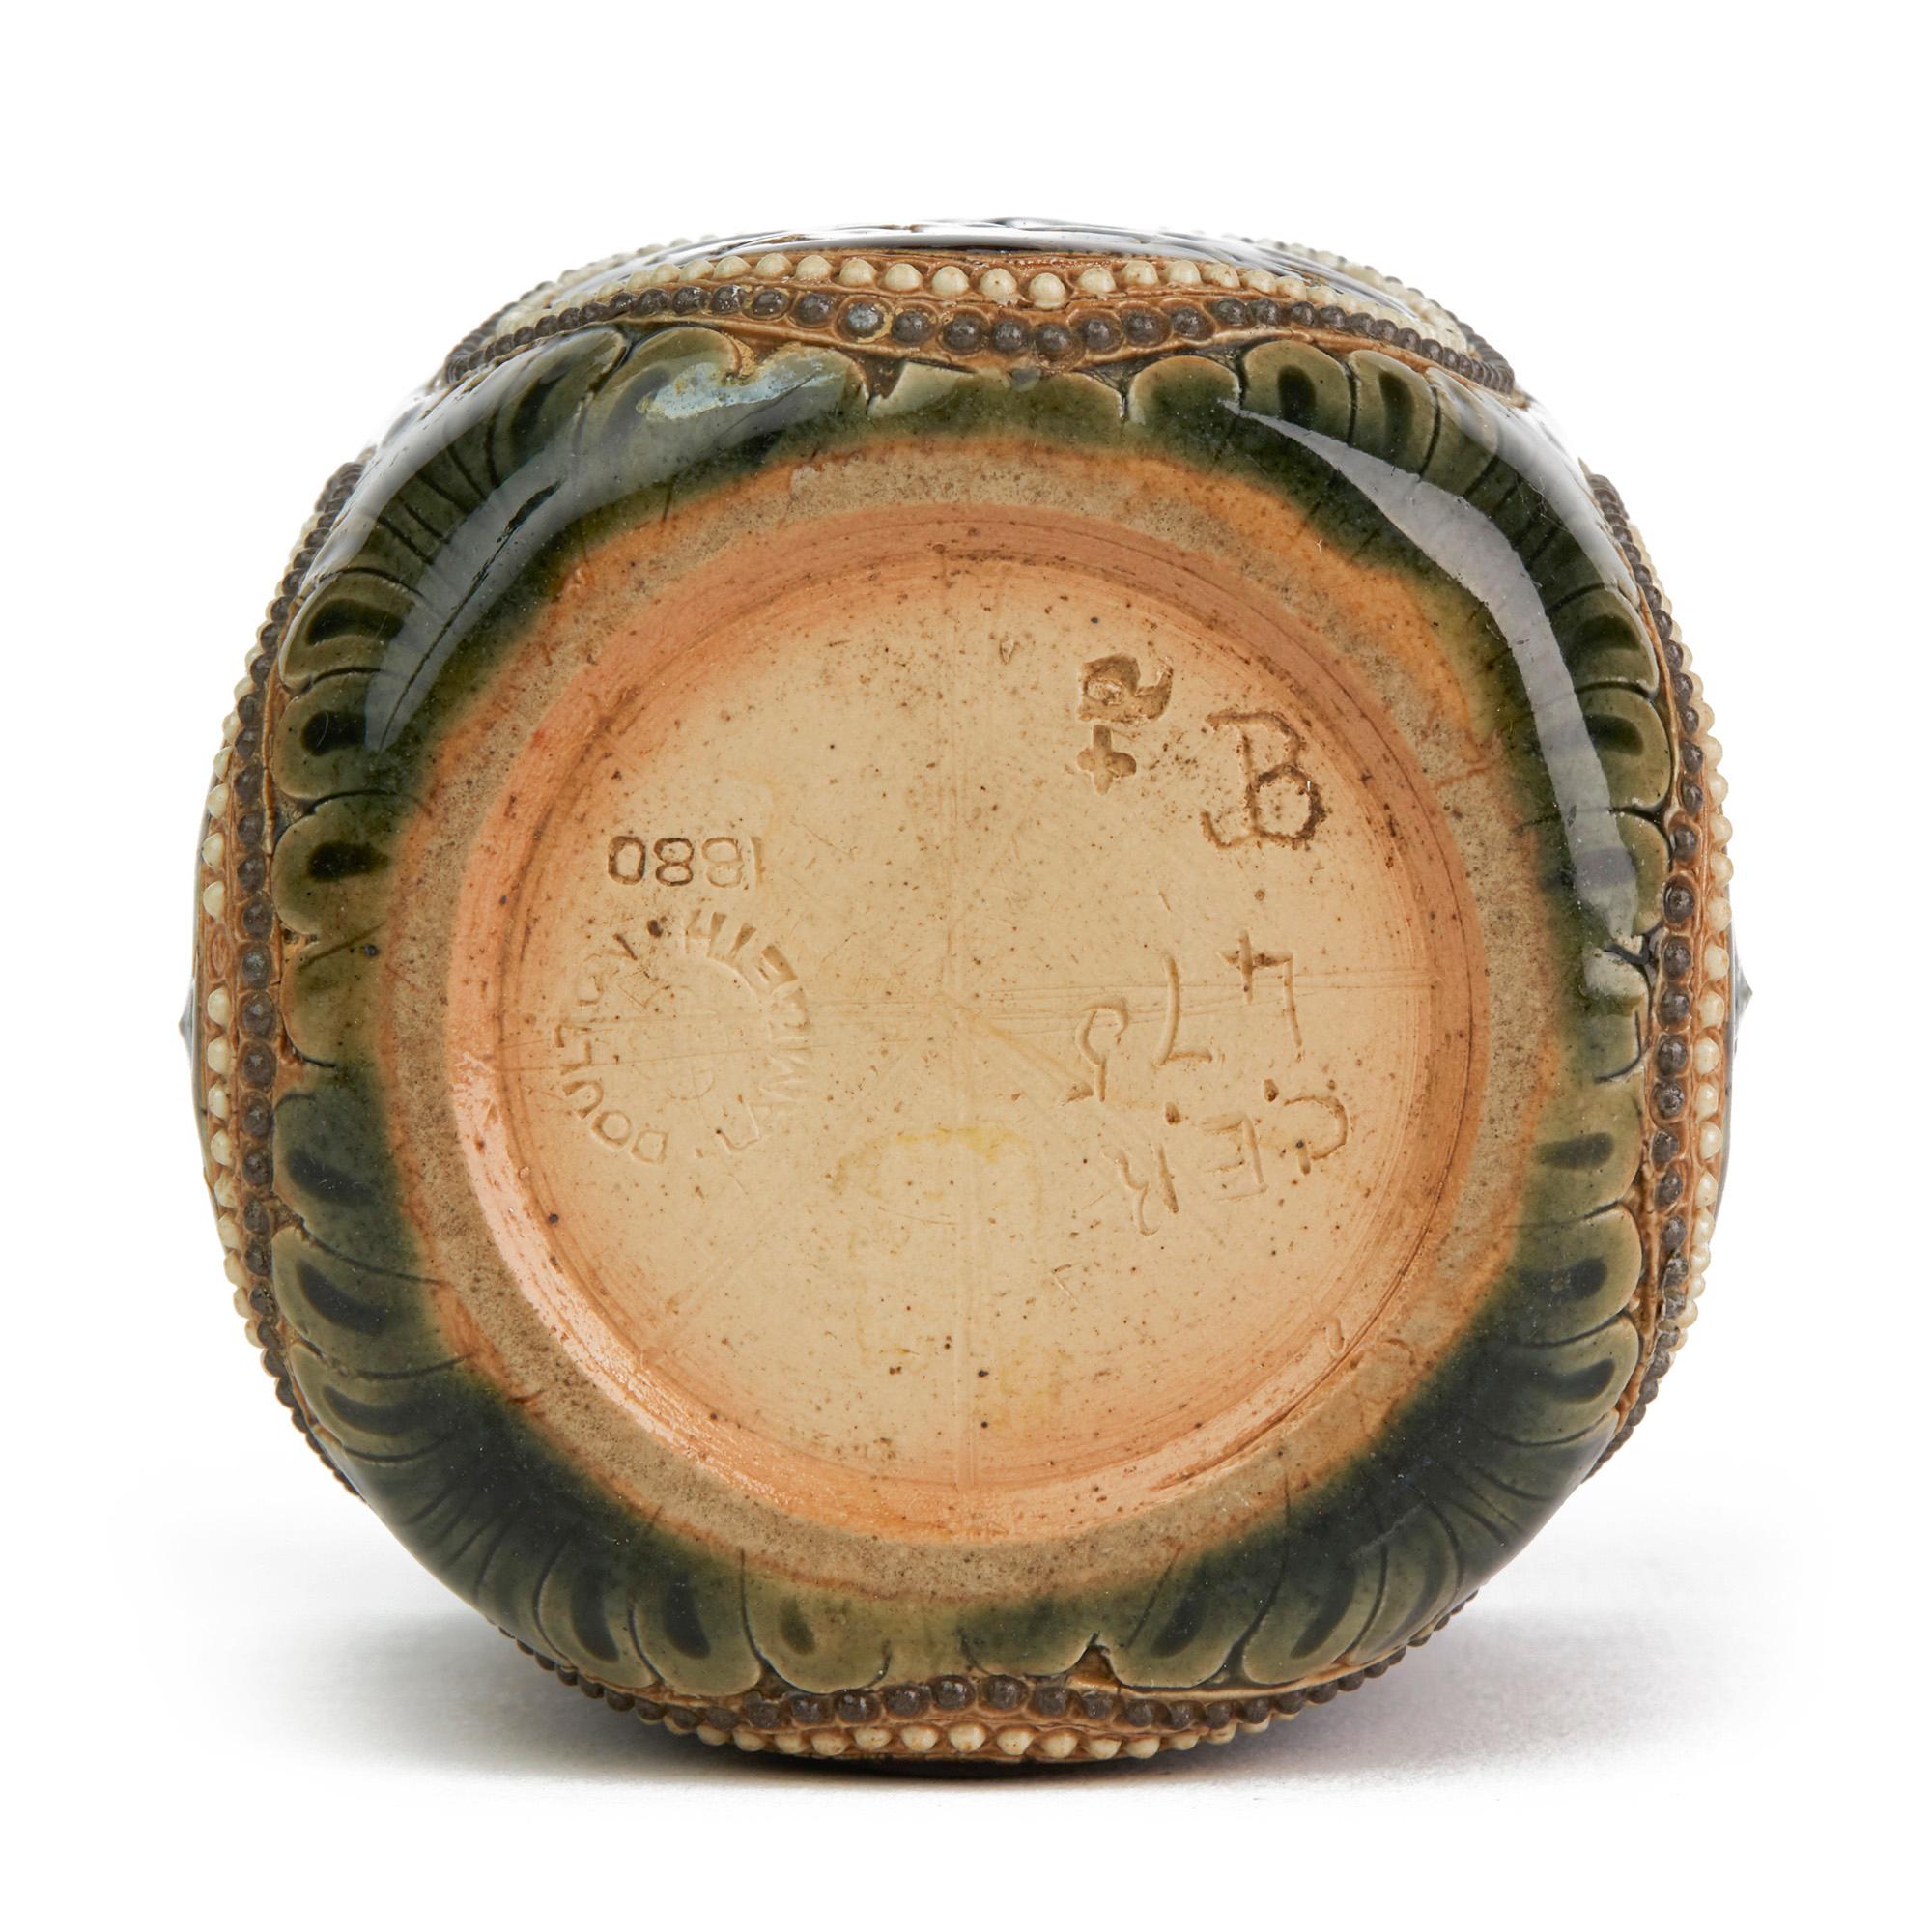 Rare et exceptionnel récipient en forme de gobelet en poterie d'art Lambeth de Doulton, magnifiquement décoré de panneaux floraux par le célèbre artiste John Broad et daté de 1880. Cette pièce d'une finesse inhabituelle est de forme carrée avec des